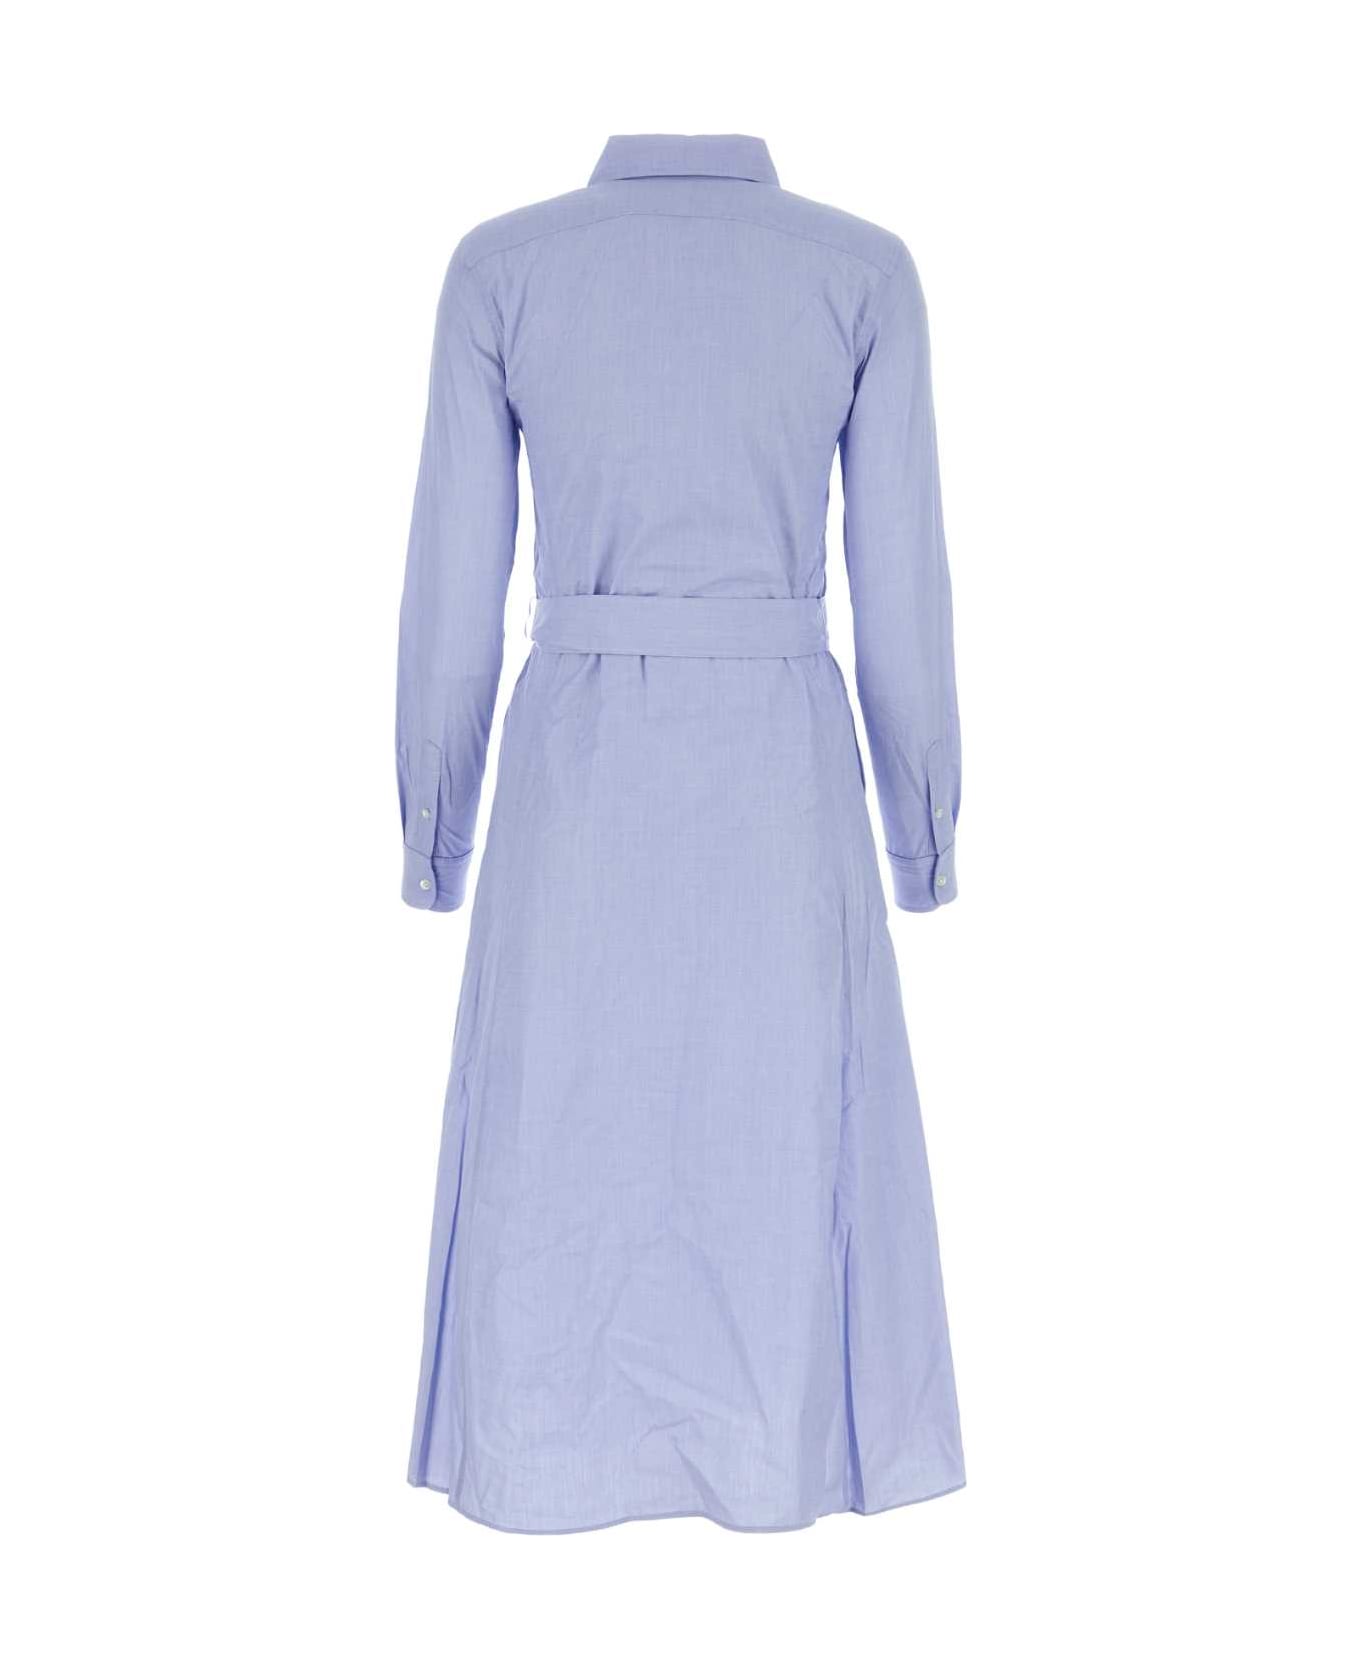 Polo Ralph Lauren Cerulean Blue Poplin Shirt Dress - CLASSICMEDIUMBLUE